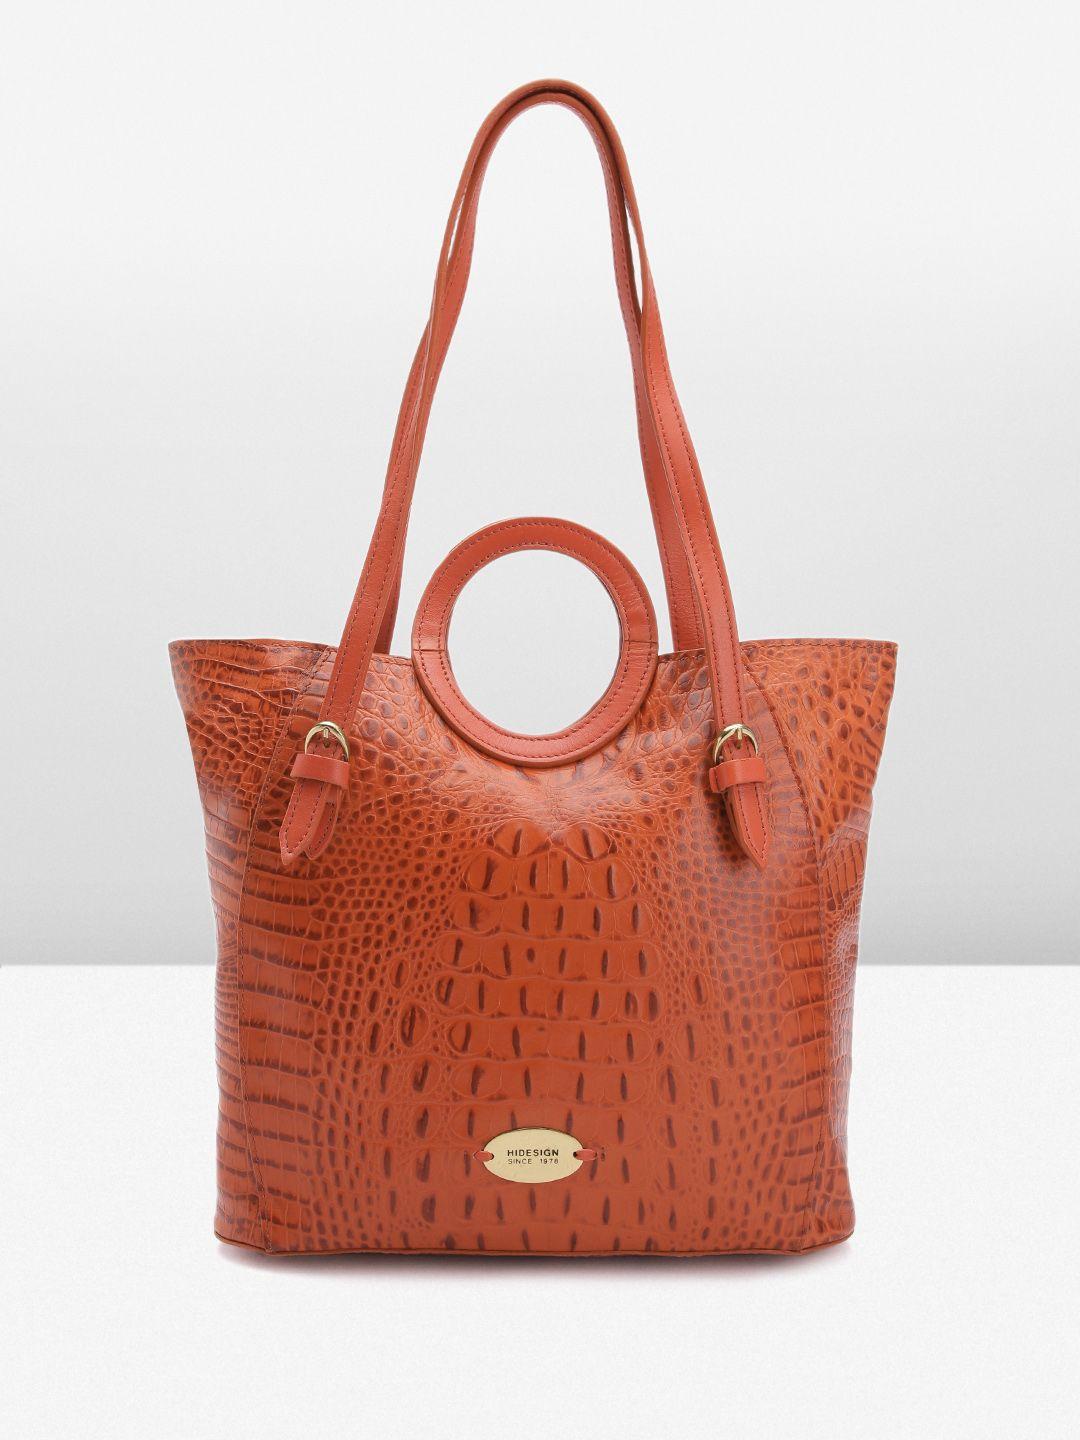 hidesign croc textured leather structured shoulder bag